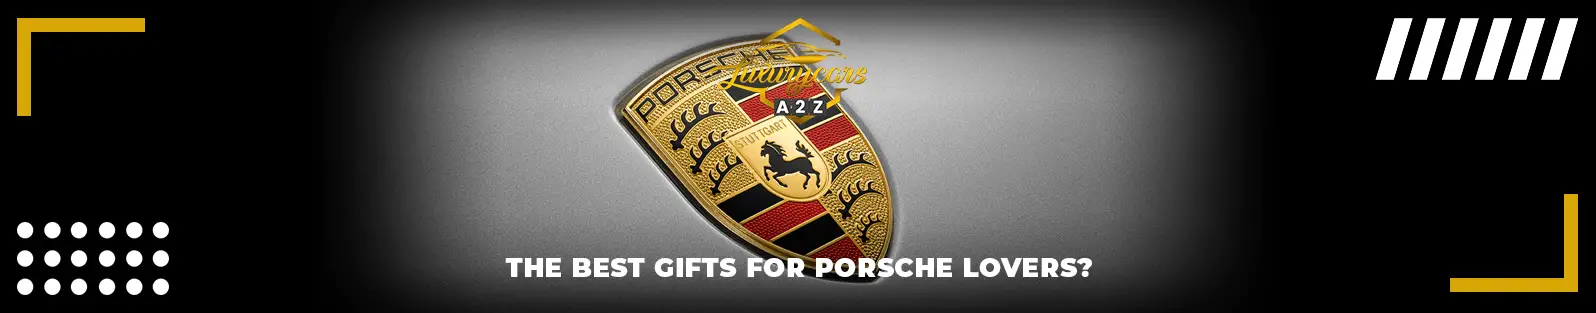 Les meilleurs cadeaux pour les amoureux de Porsche